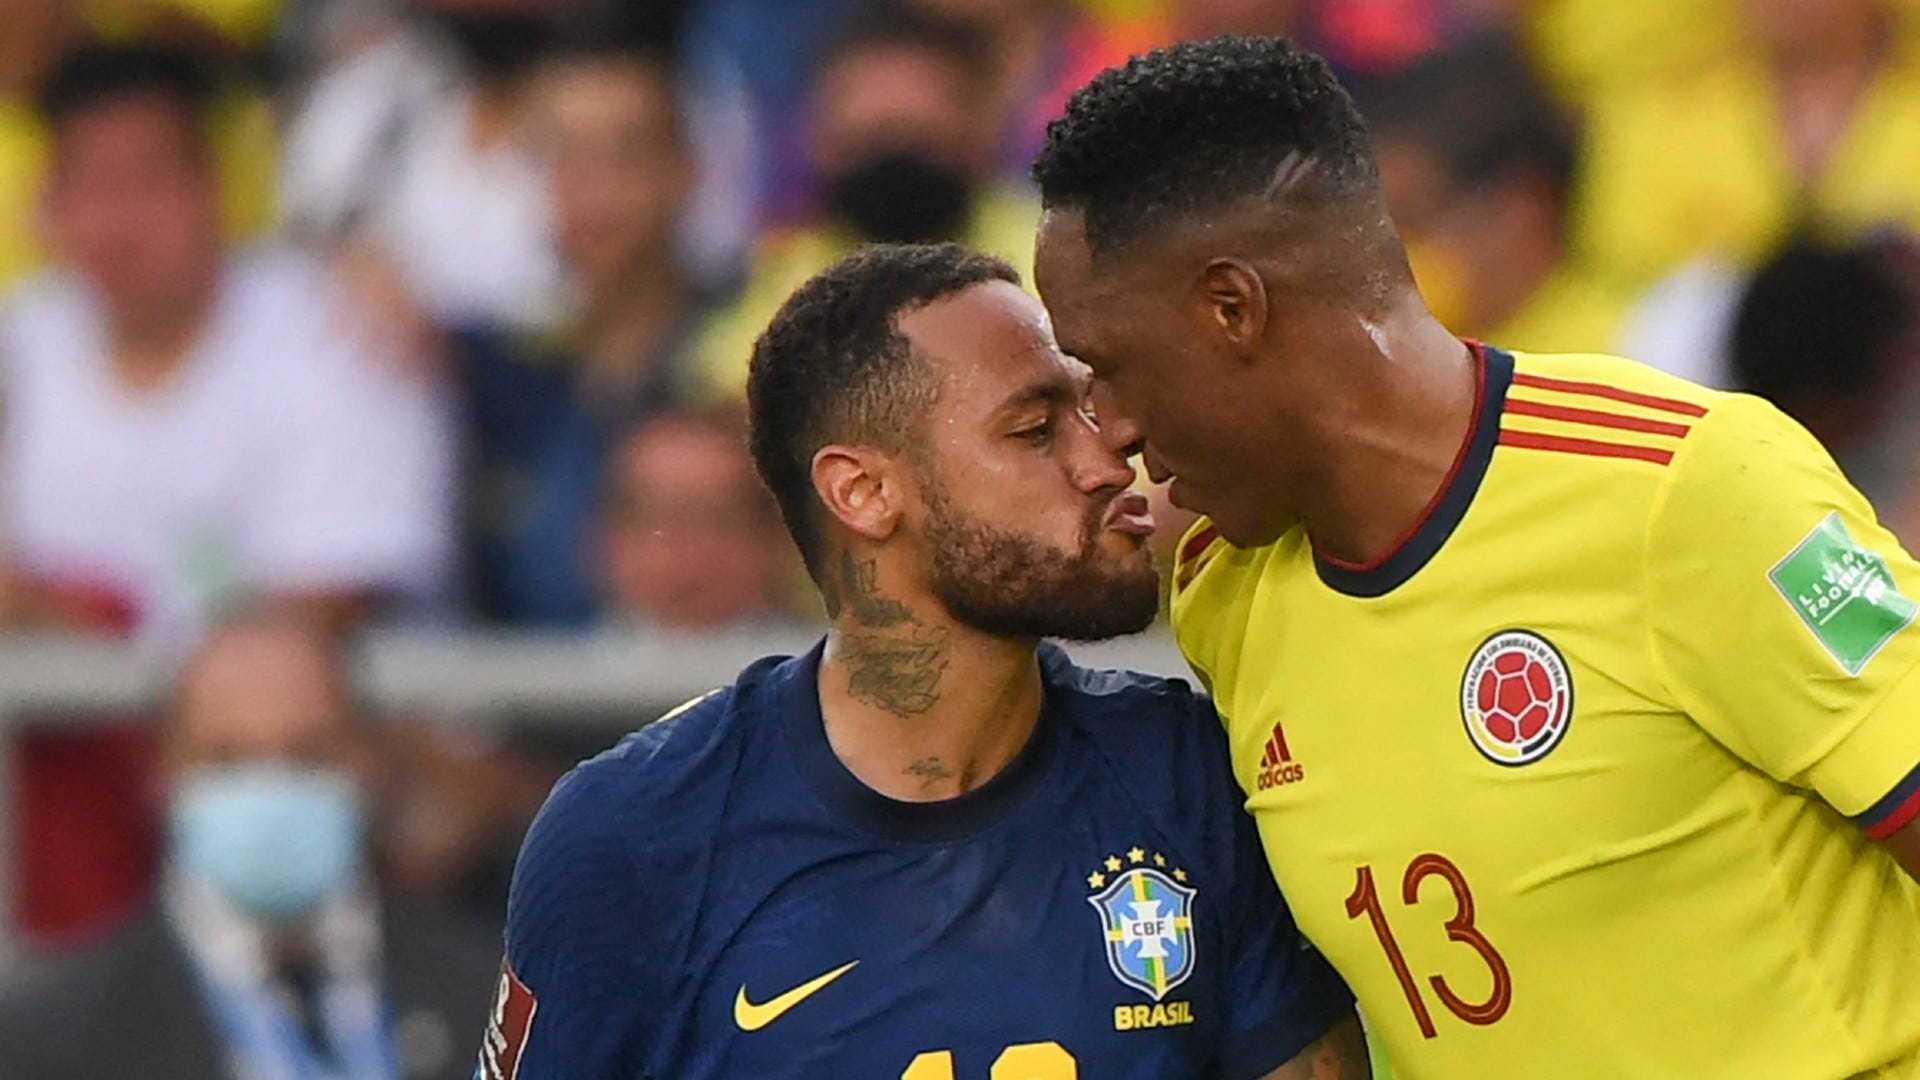 Neymar's impact on Brazilian football's jerseys